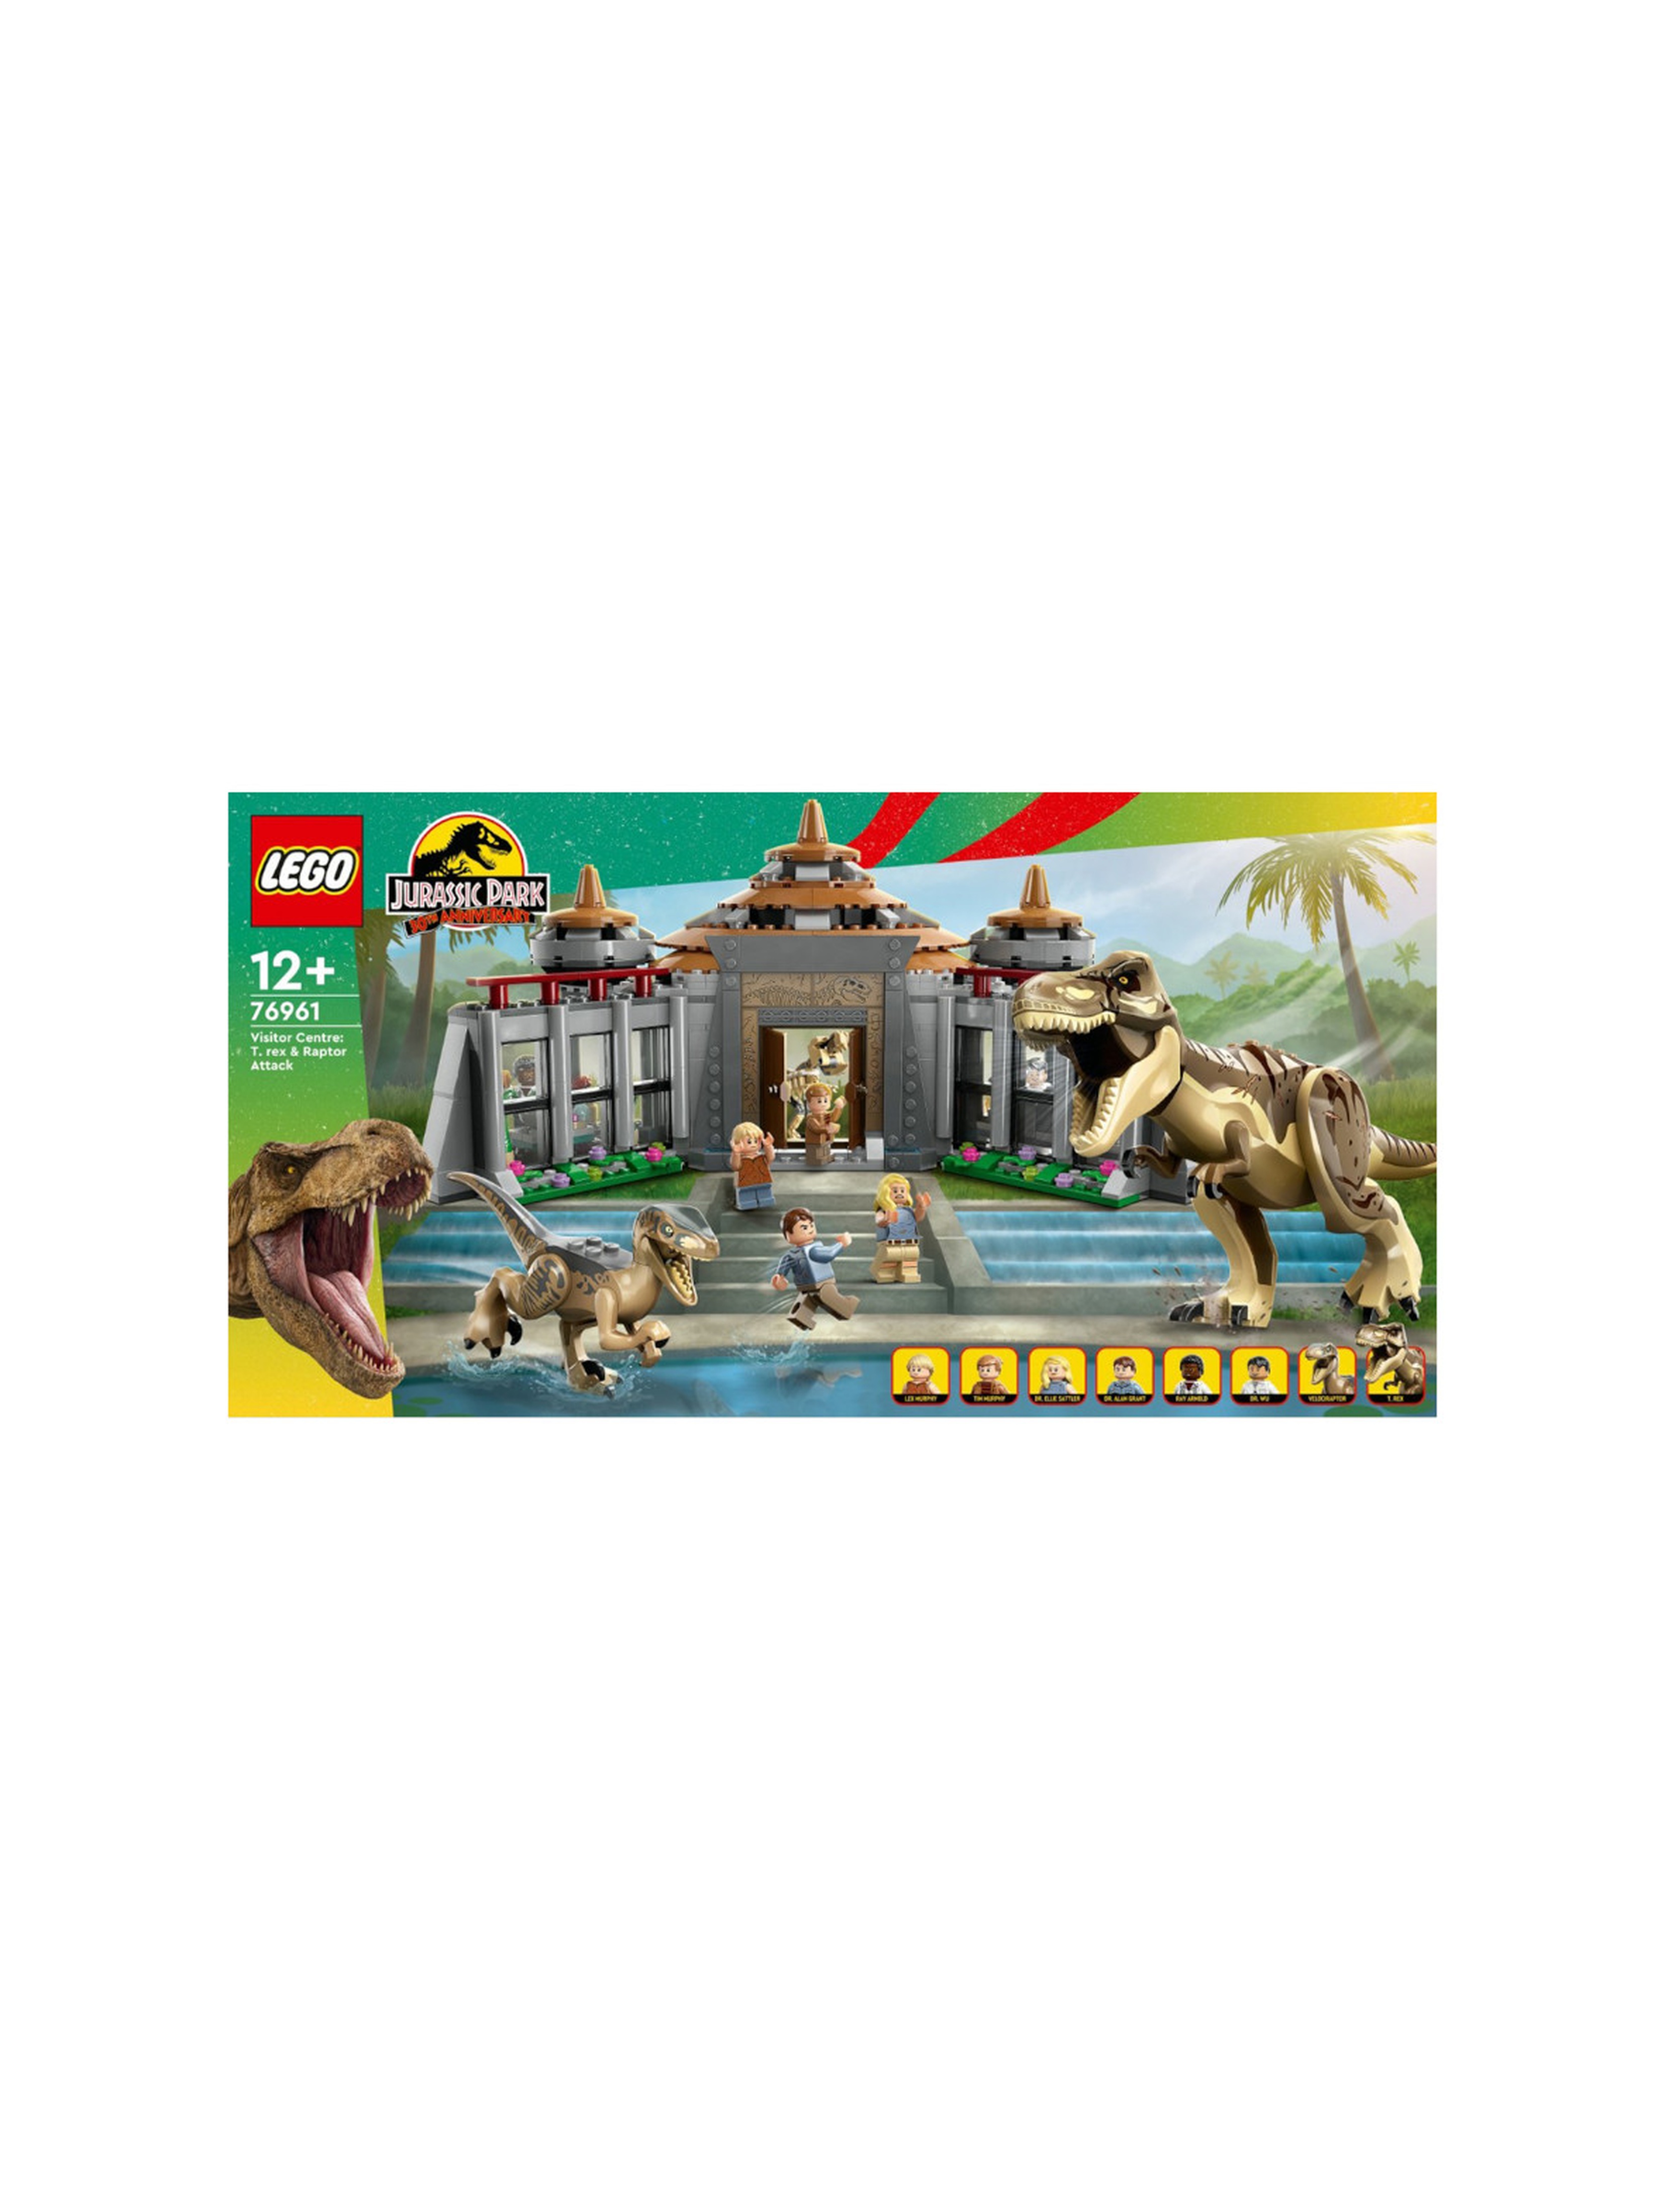 Klocki LEGO Jurassic World 76961 Centrum dla odwiedzających: atak tyranozaura i raptora - 693 elementy, wiek 12 +